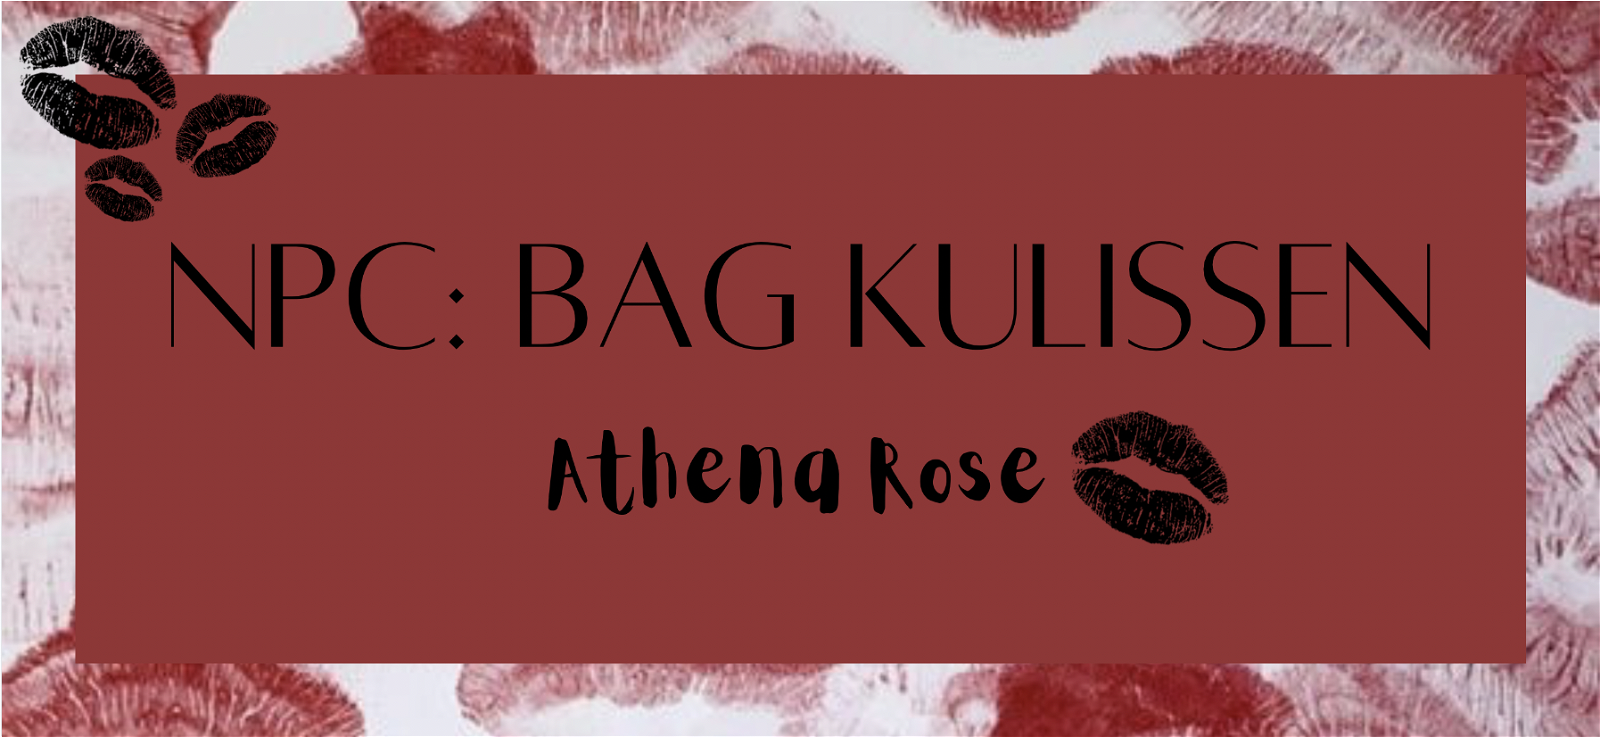 NPC: Bag kulissen - Athena Rose